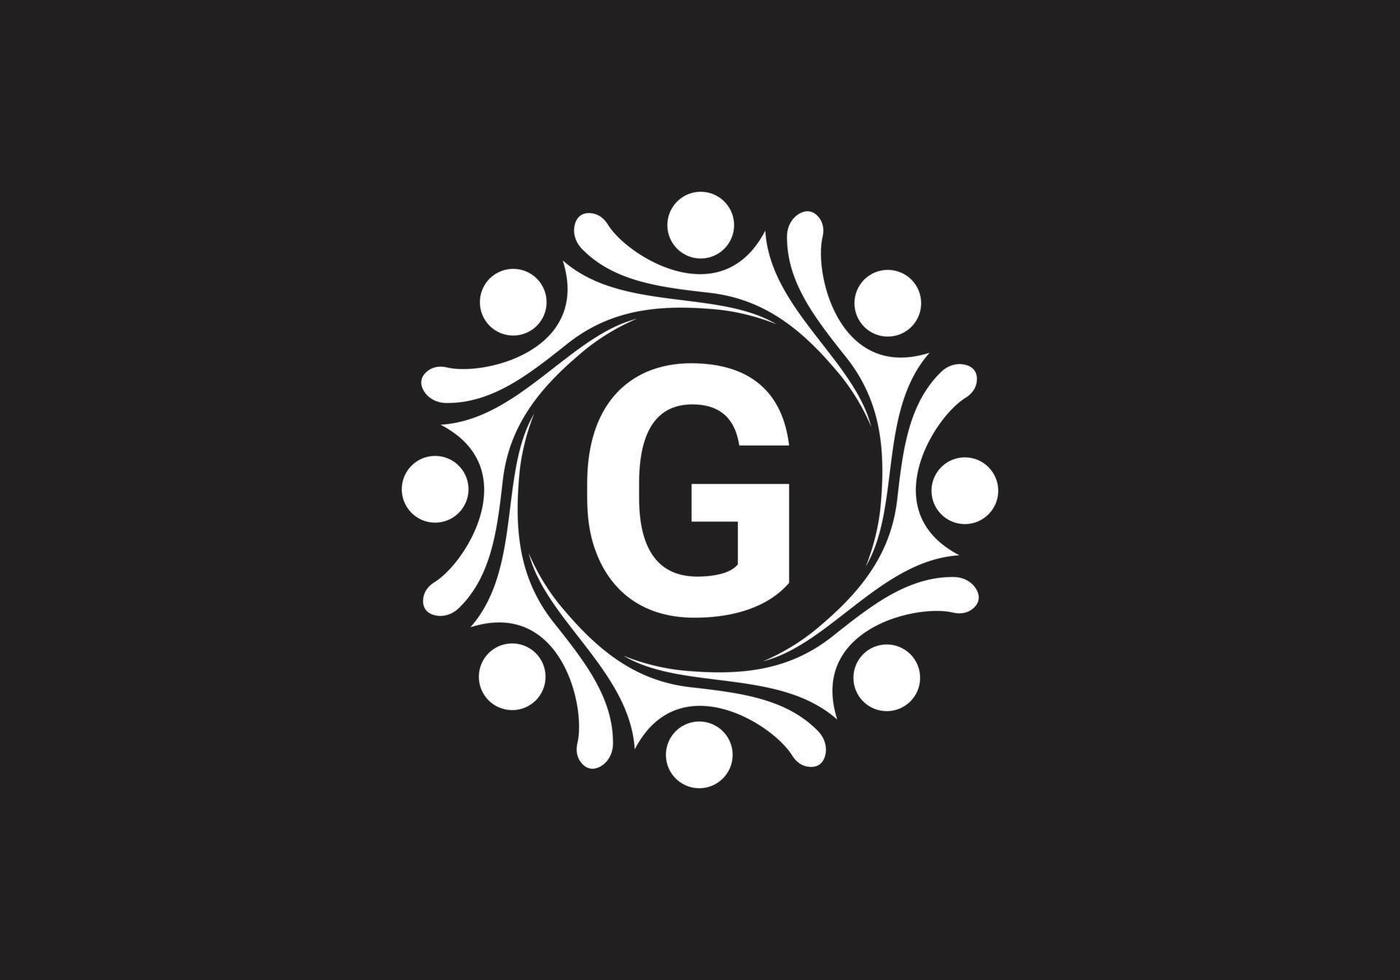 dit is een letter g logo pictogram ontwerp vector